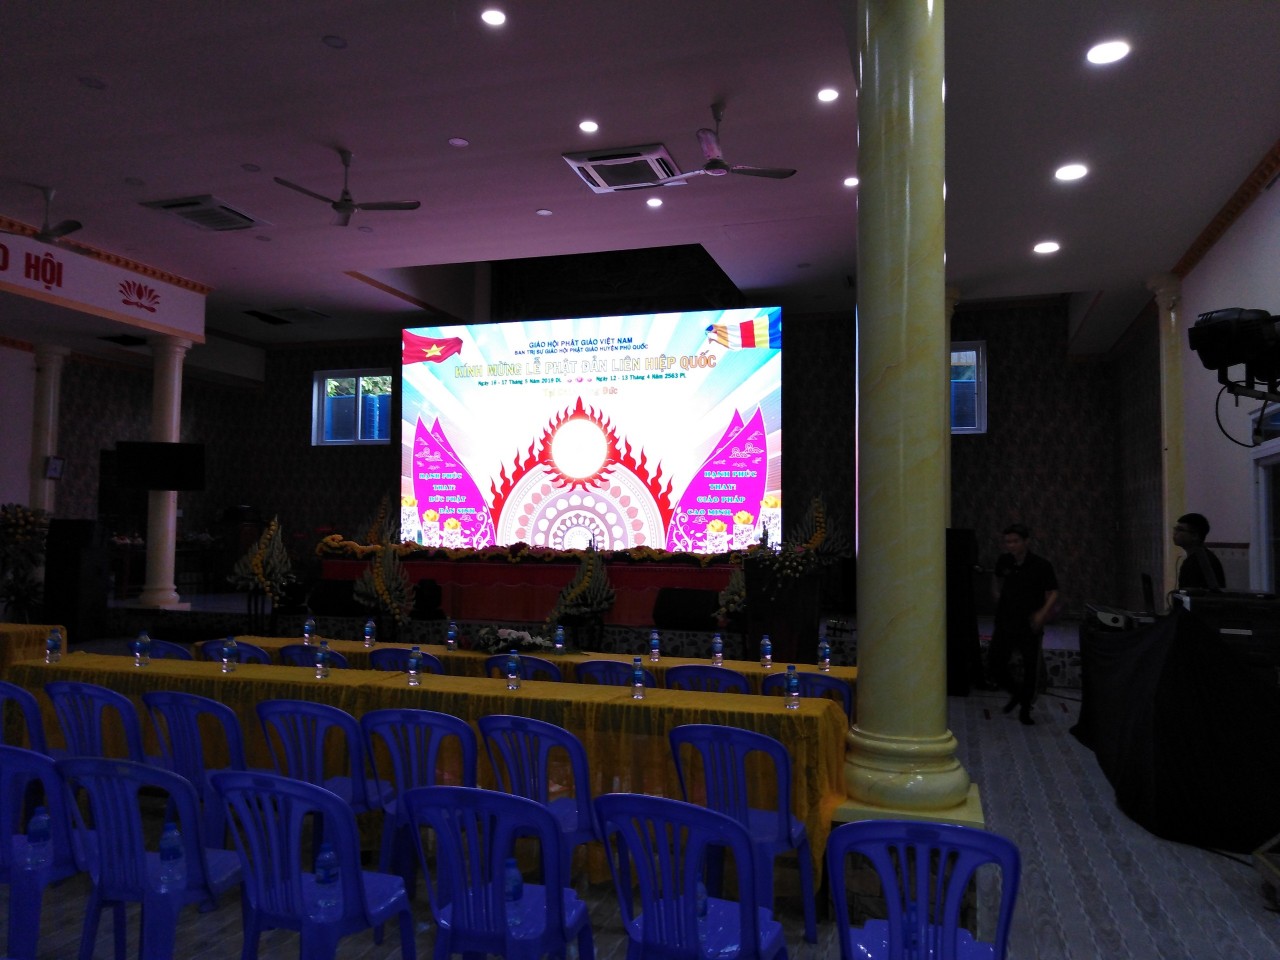 Thi công màn hình Led P4 Qiangli tại nhà hàng Tiệc cưới tỉnh Hòa Bình led123